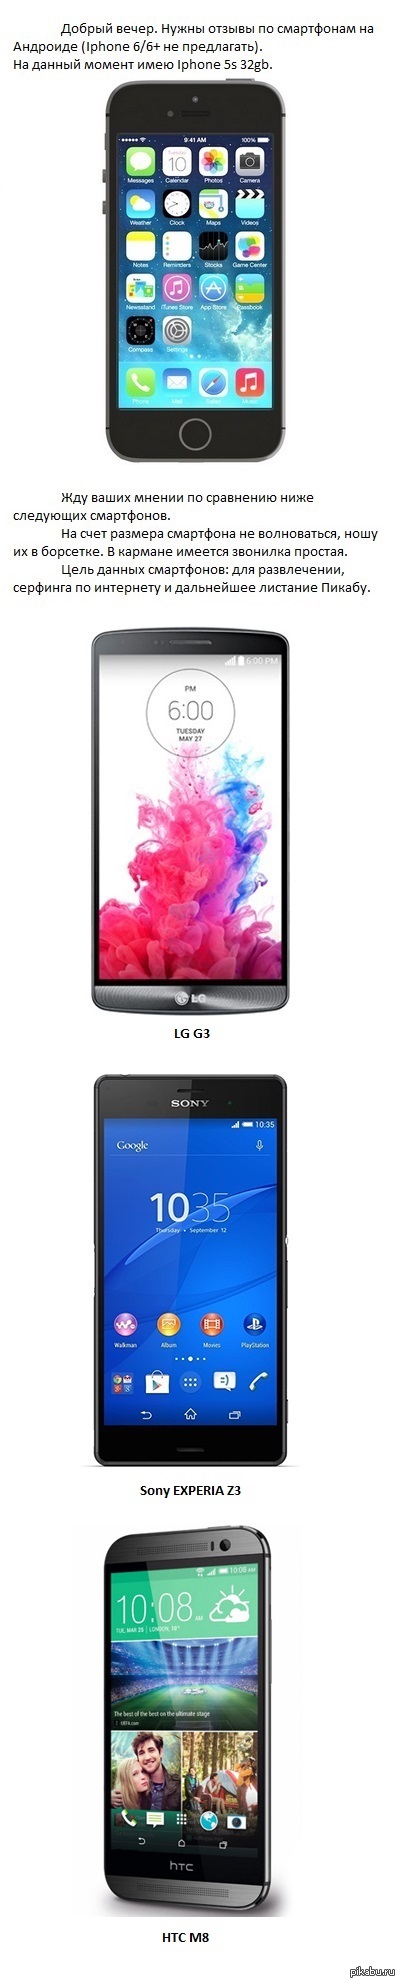       (  *) LG G3 / Sony XPERIA Z3 / HTC M8    20-25   (100-125     )